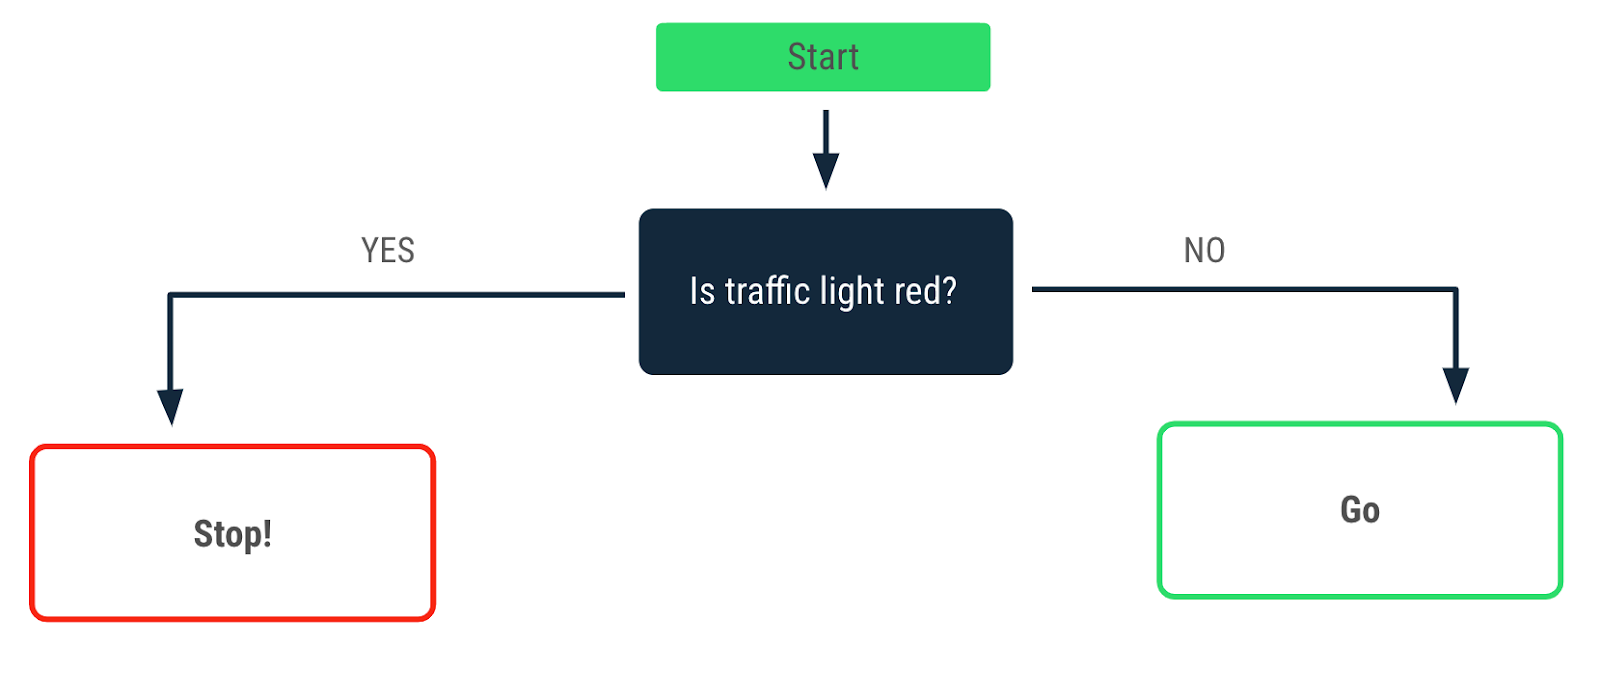 Diagrama de flujo en el que se describe una decisión tomada cuando el color del semáforo es rojo. Una flecha de afirmación apunta a un mensaje que indica "Detenerse". Una flecha de negación que apunta a un mensaje que indica "Avanzar".